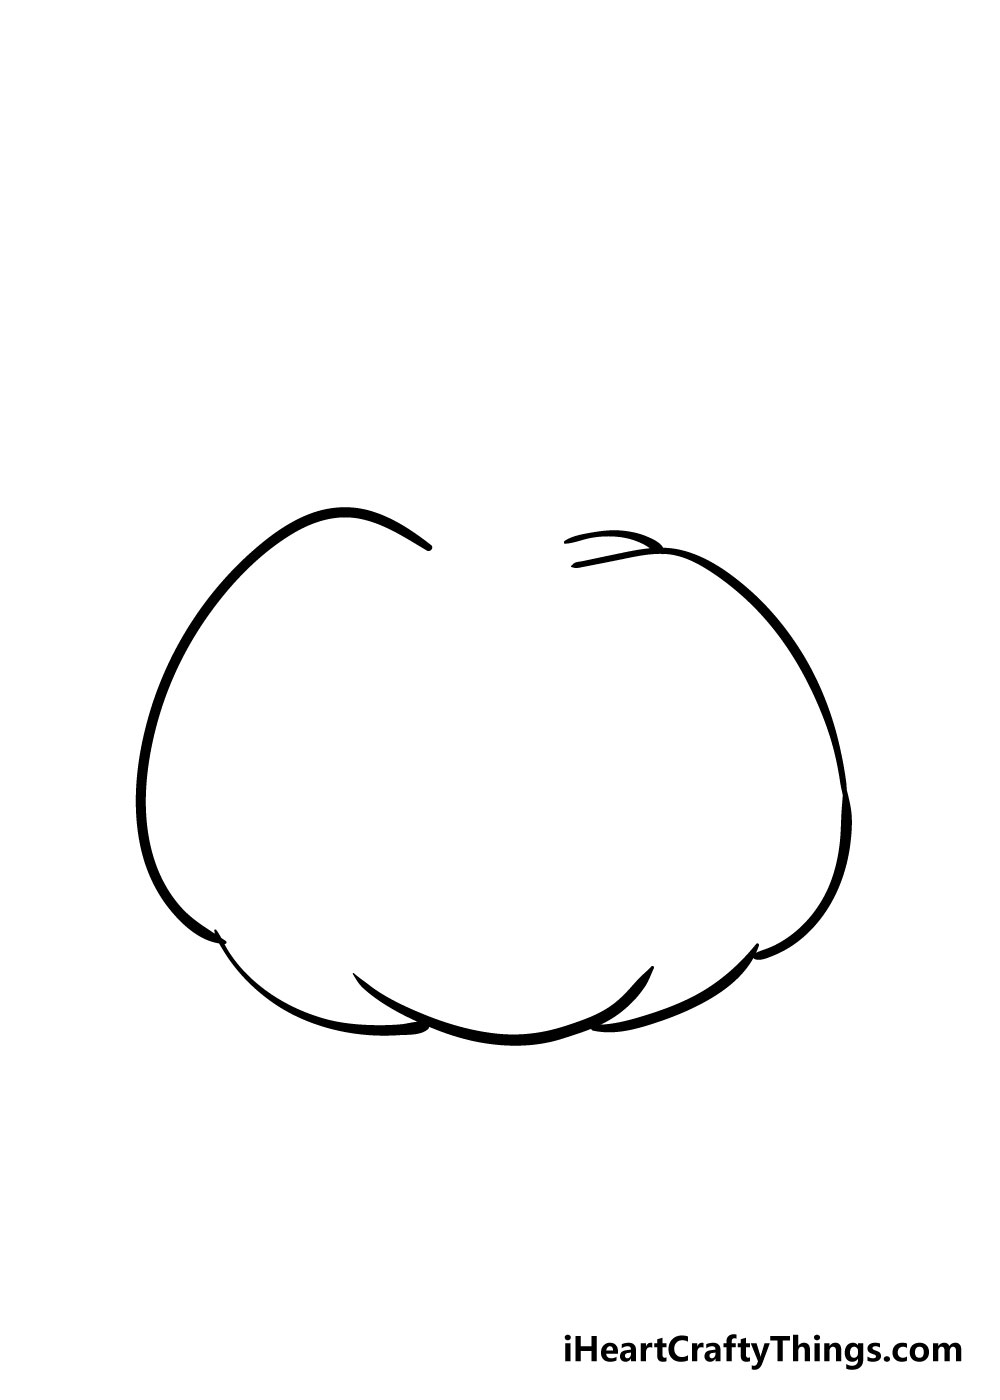 How to draw pumpkin 3 - Hướng dẫn chi tiết cách vẽ quả bí ngô đơn giản với 6 bước cơ bản